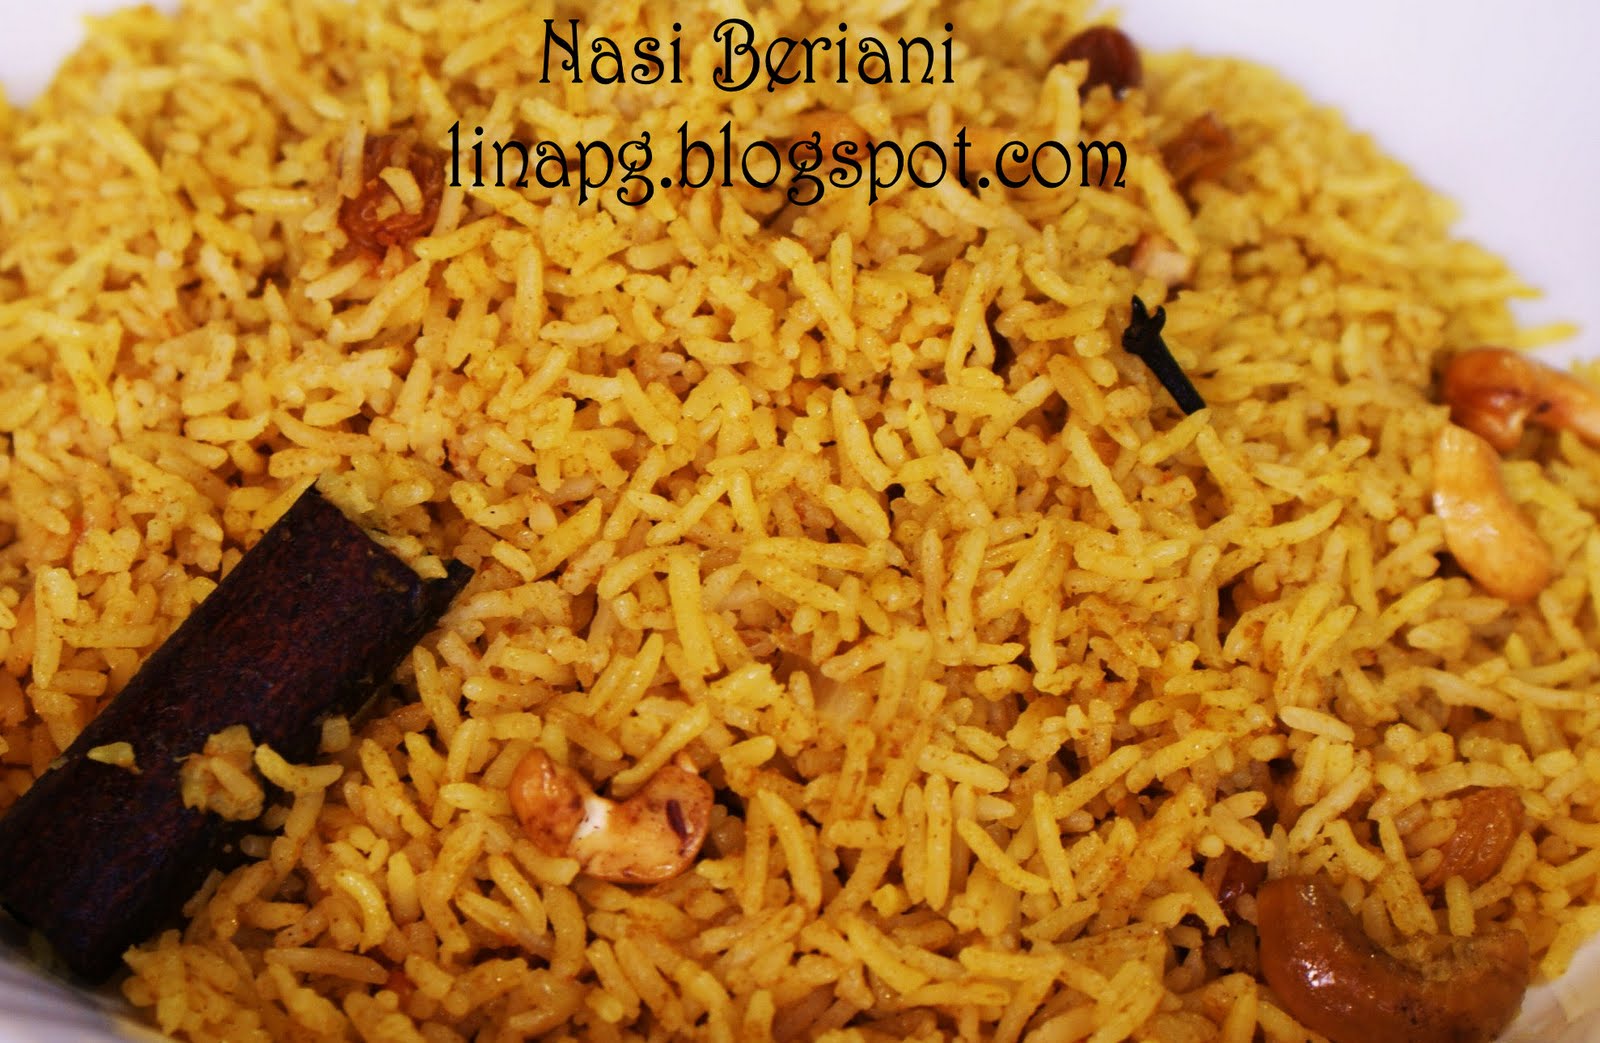 Nasi Beriani, Ayam Msk Merah, Daging Masak Hitam & Acar 